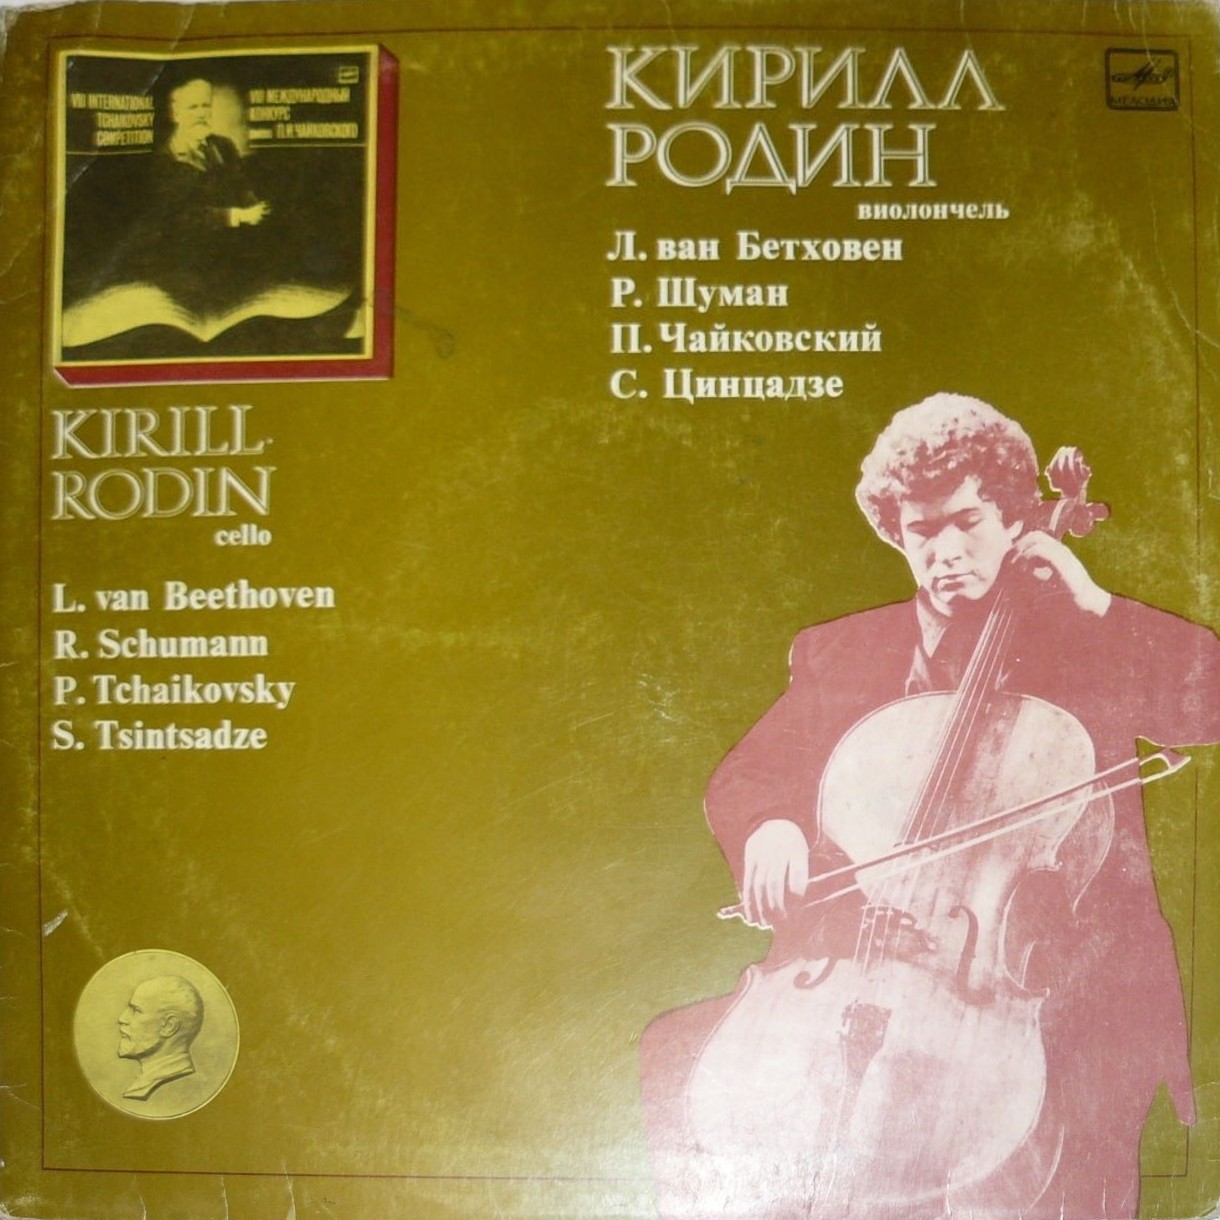 Кирилл РОДИН (виолончель)